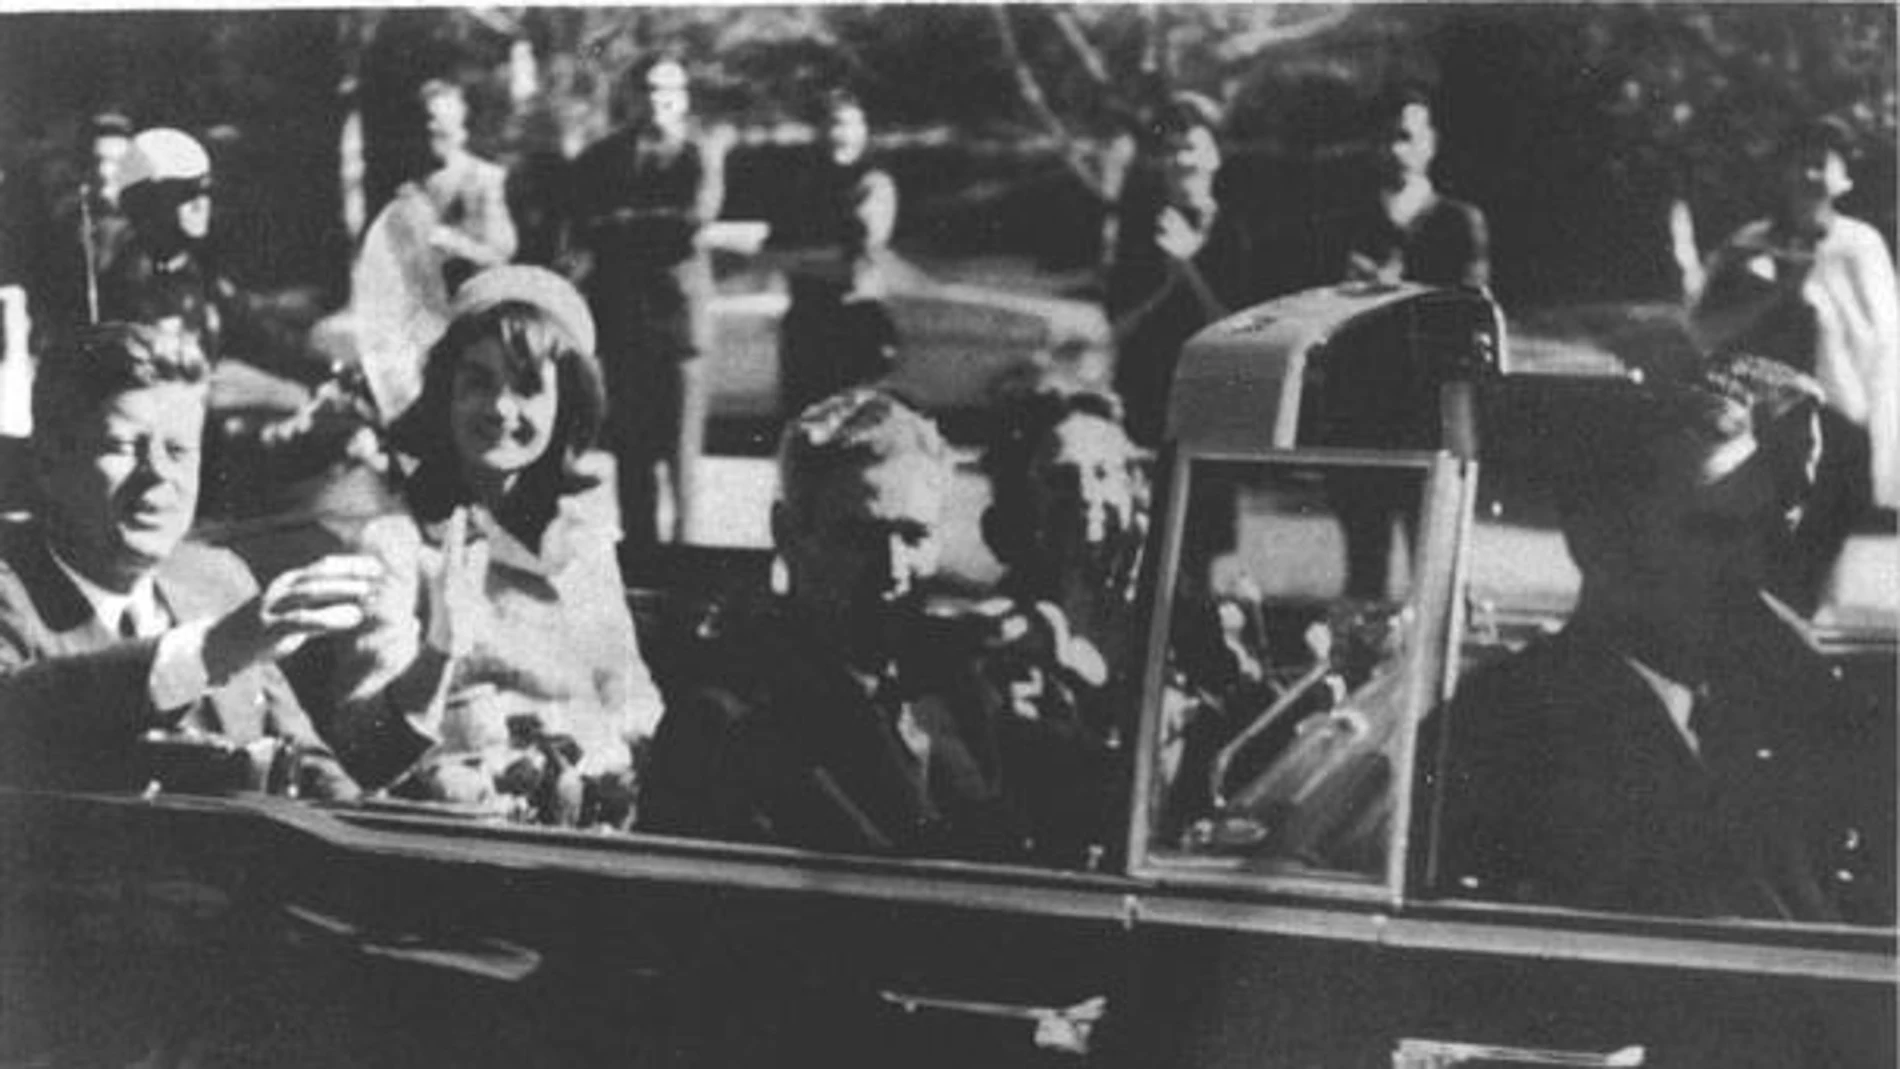 El presidente Kennedy y la primera dama Jackie Kennedy, momentos antes del asesinato de él en 1963